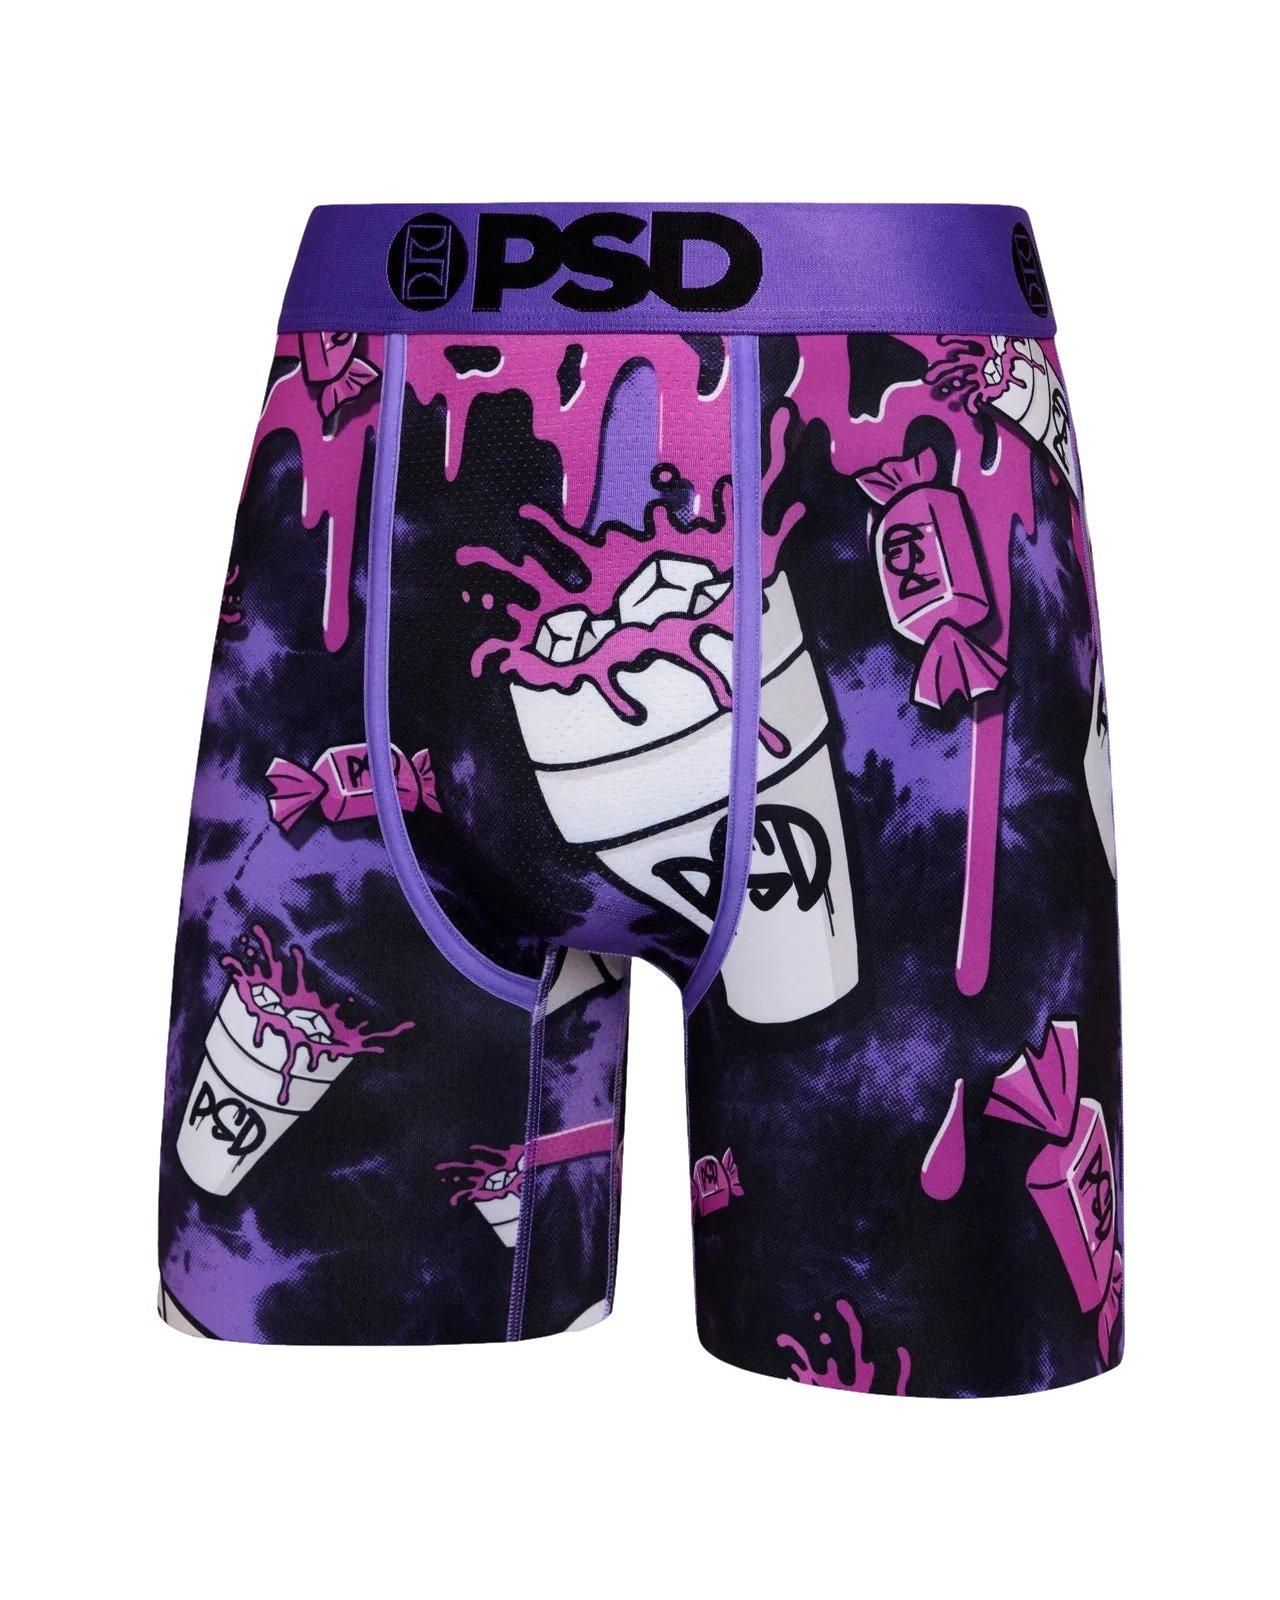 New Arrivals  PSD Underwear